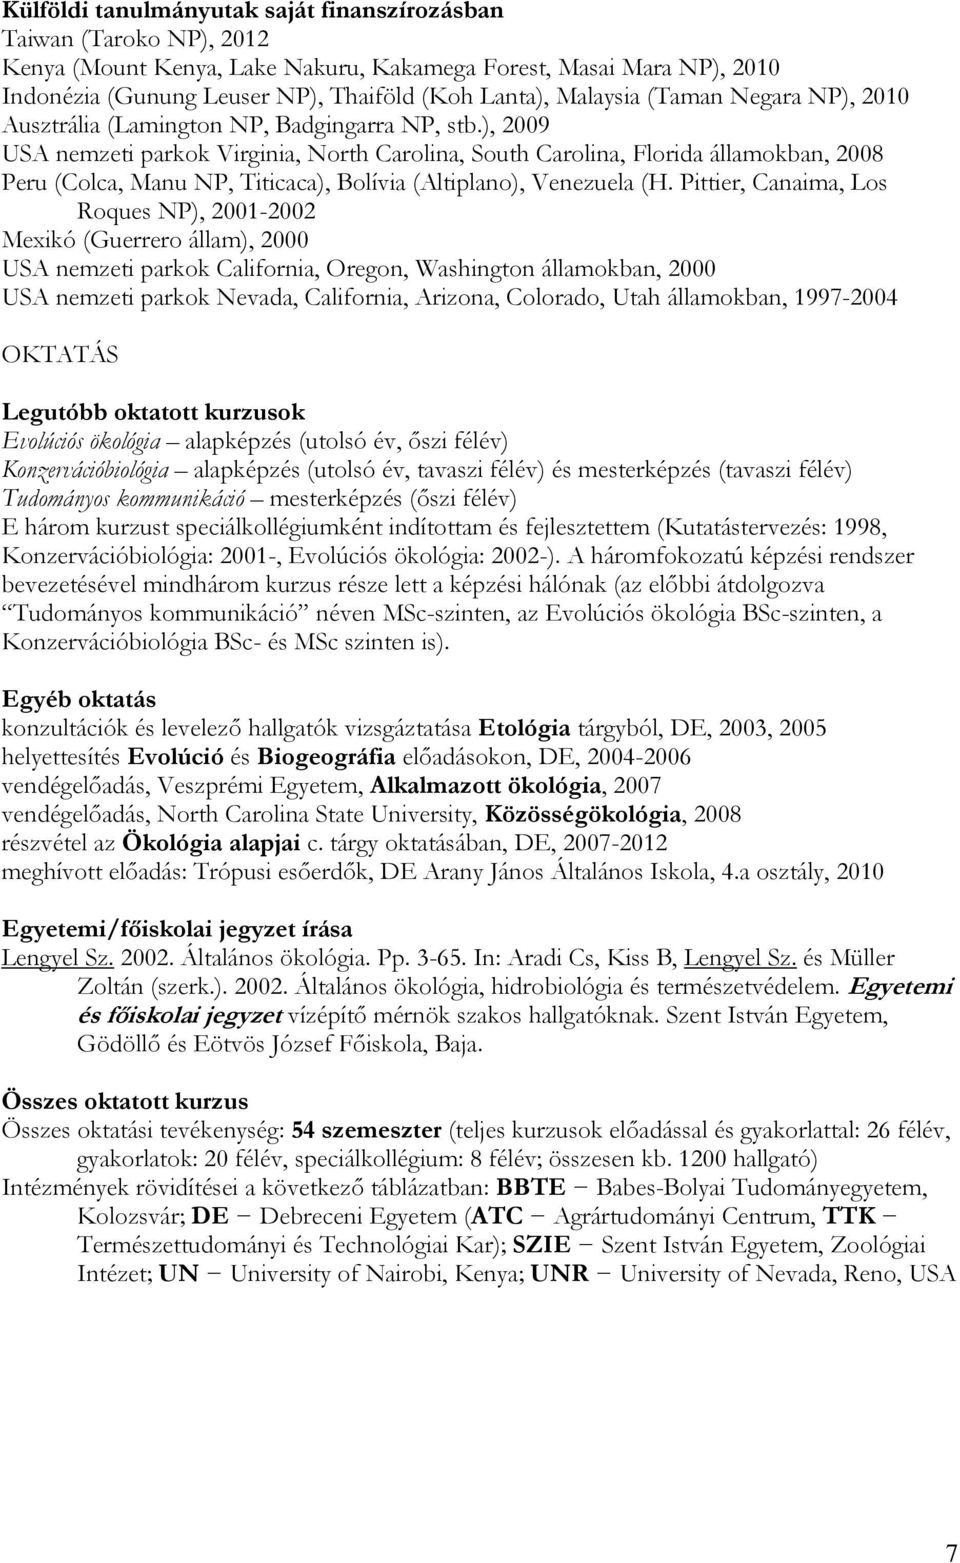 TUDOMÁNYOS ÖNÉLETRAJZ DR. LENGYEL SZABOLCS 2015/12/01 - PDF Ingyenes  letöltés